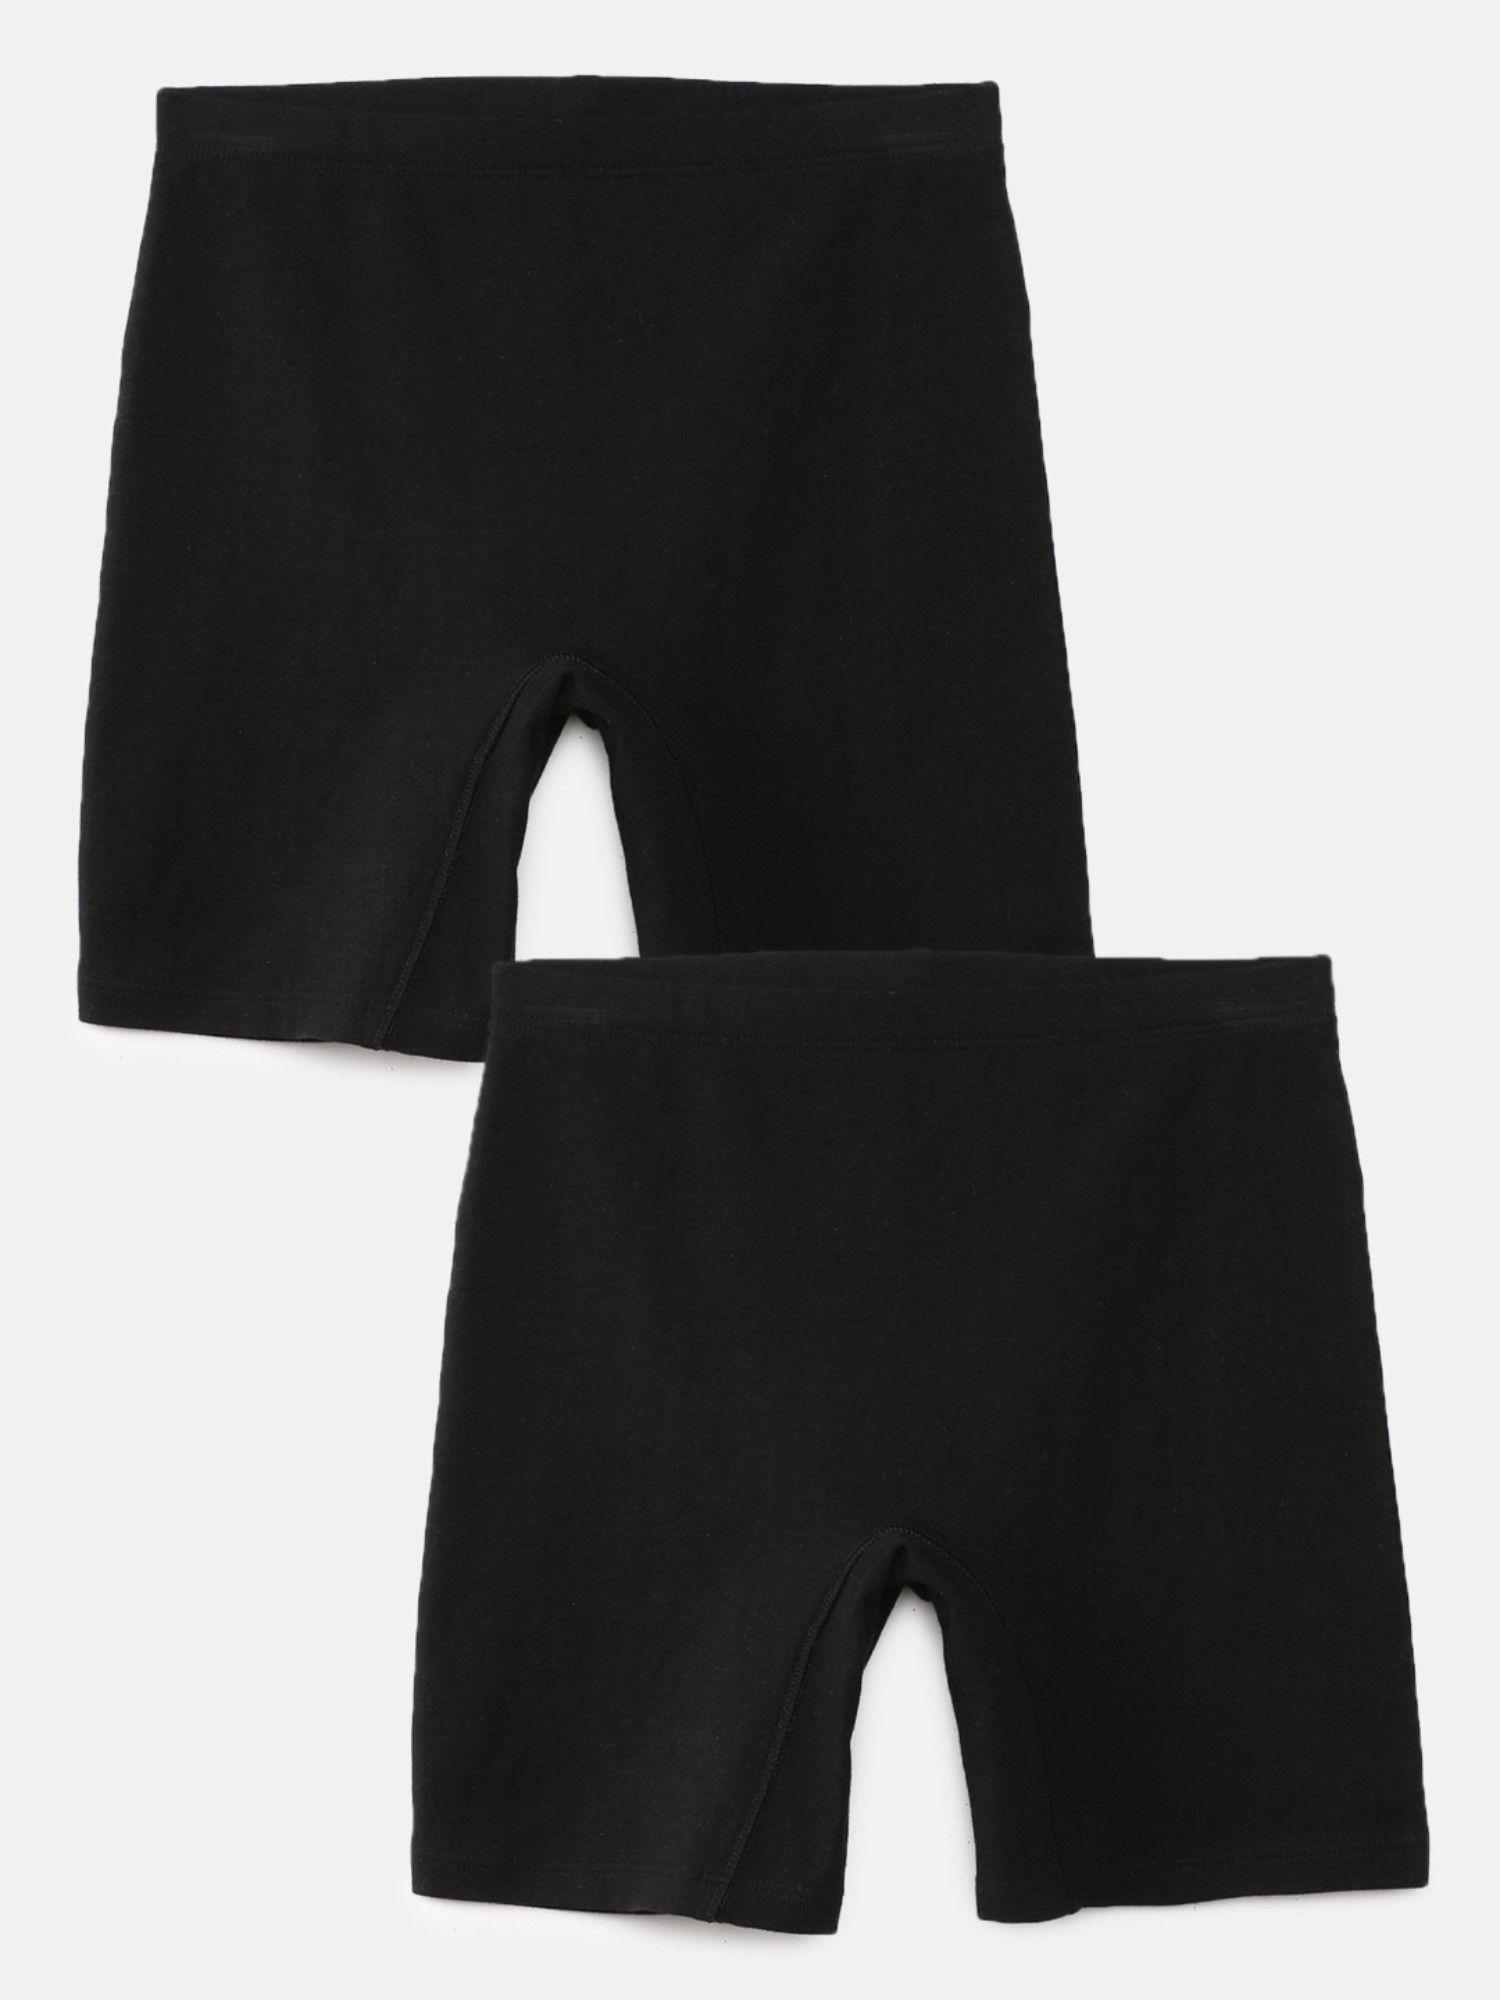 Girls Inner Shorts Black (Pack of 2)